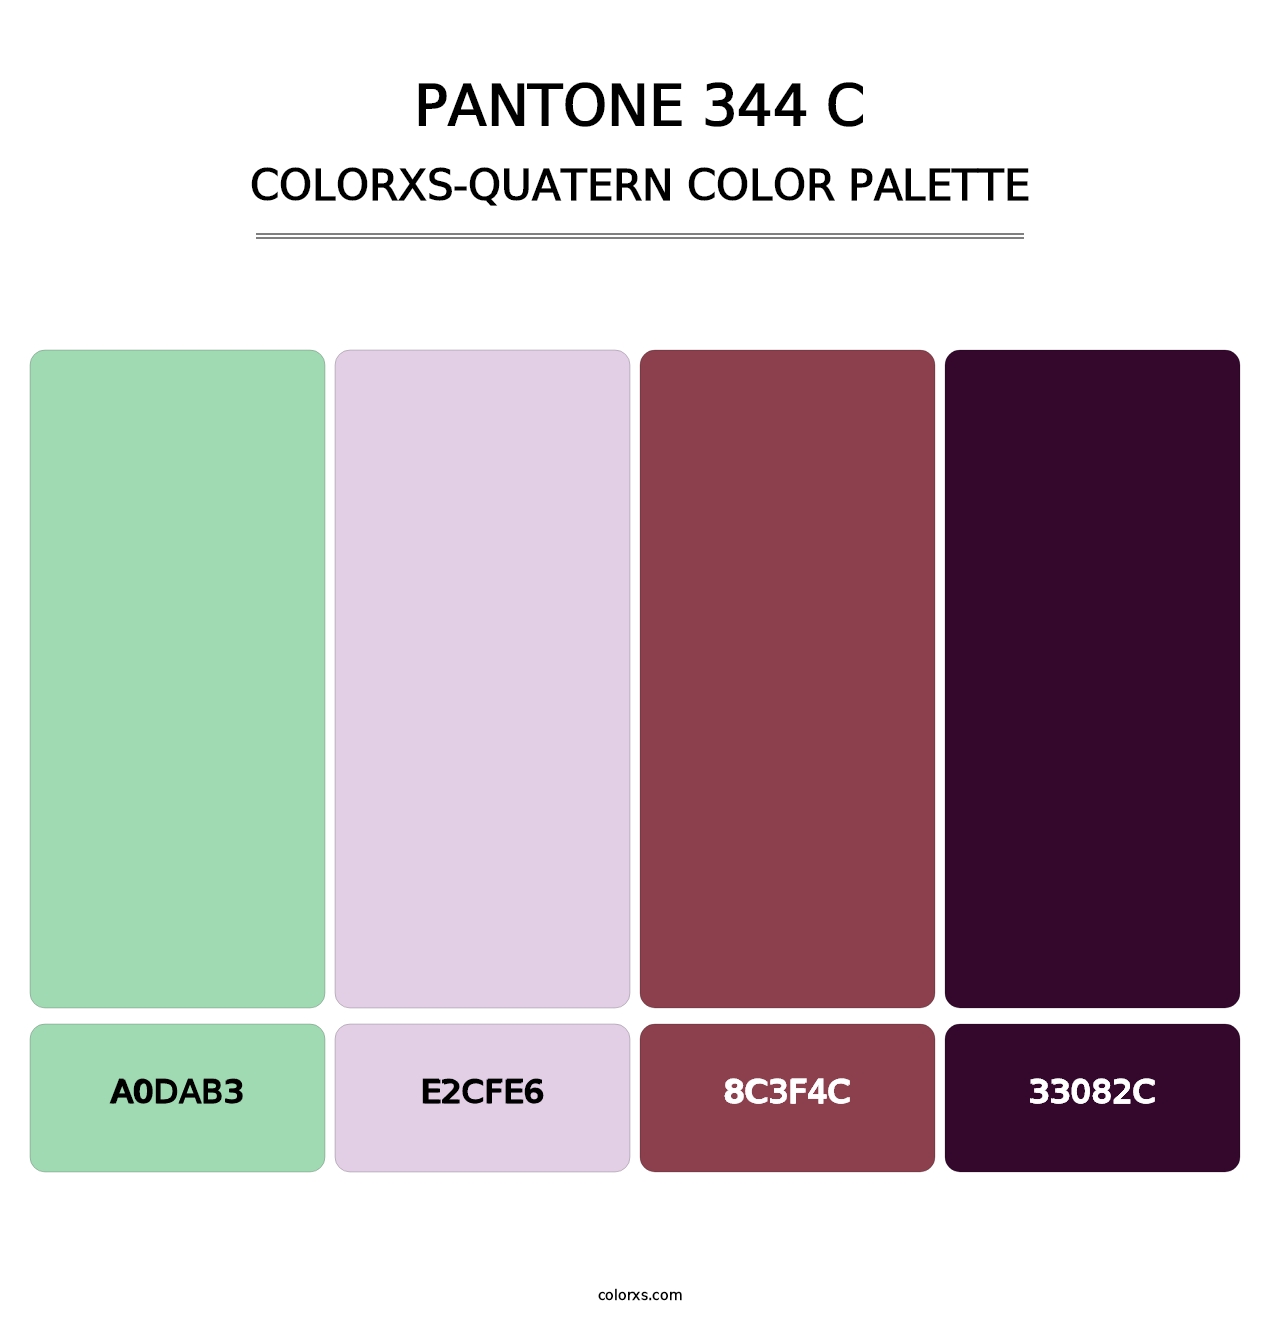 PANTONE 344 C - Colorxs Quatern Palette